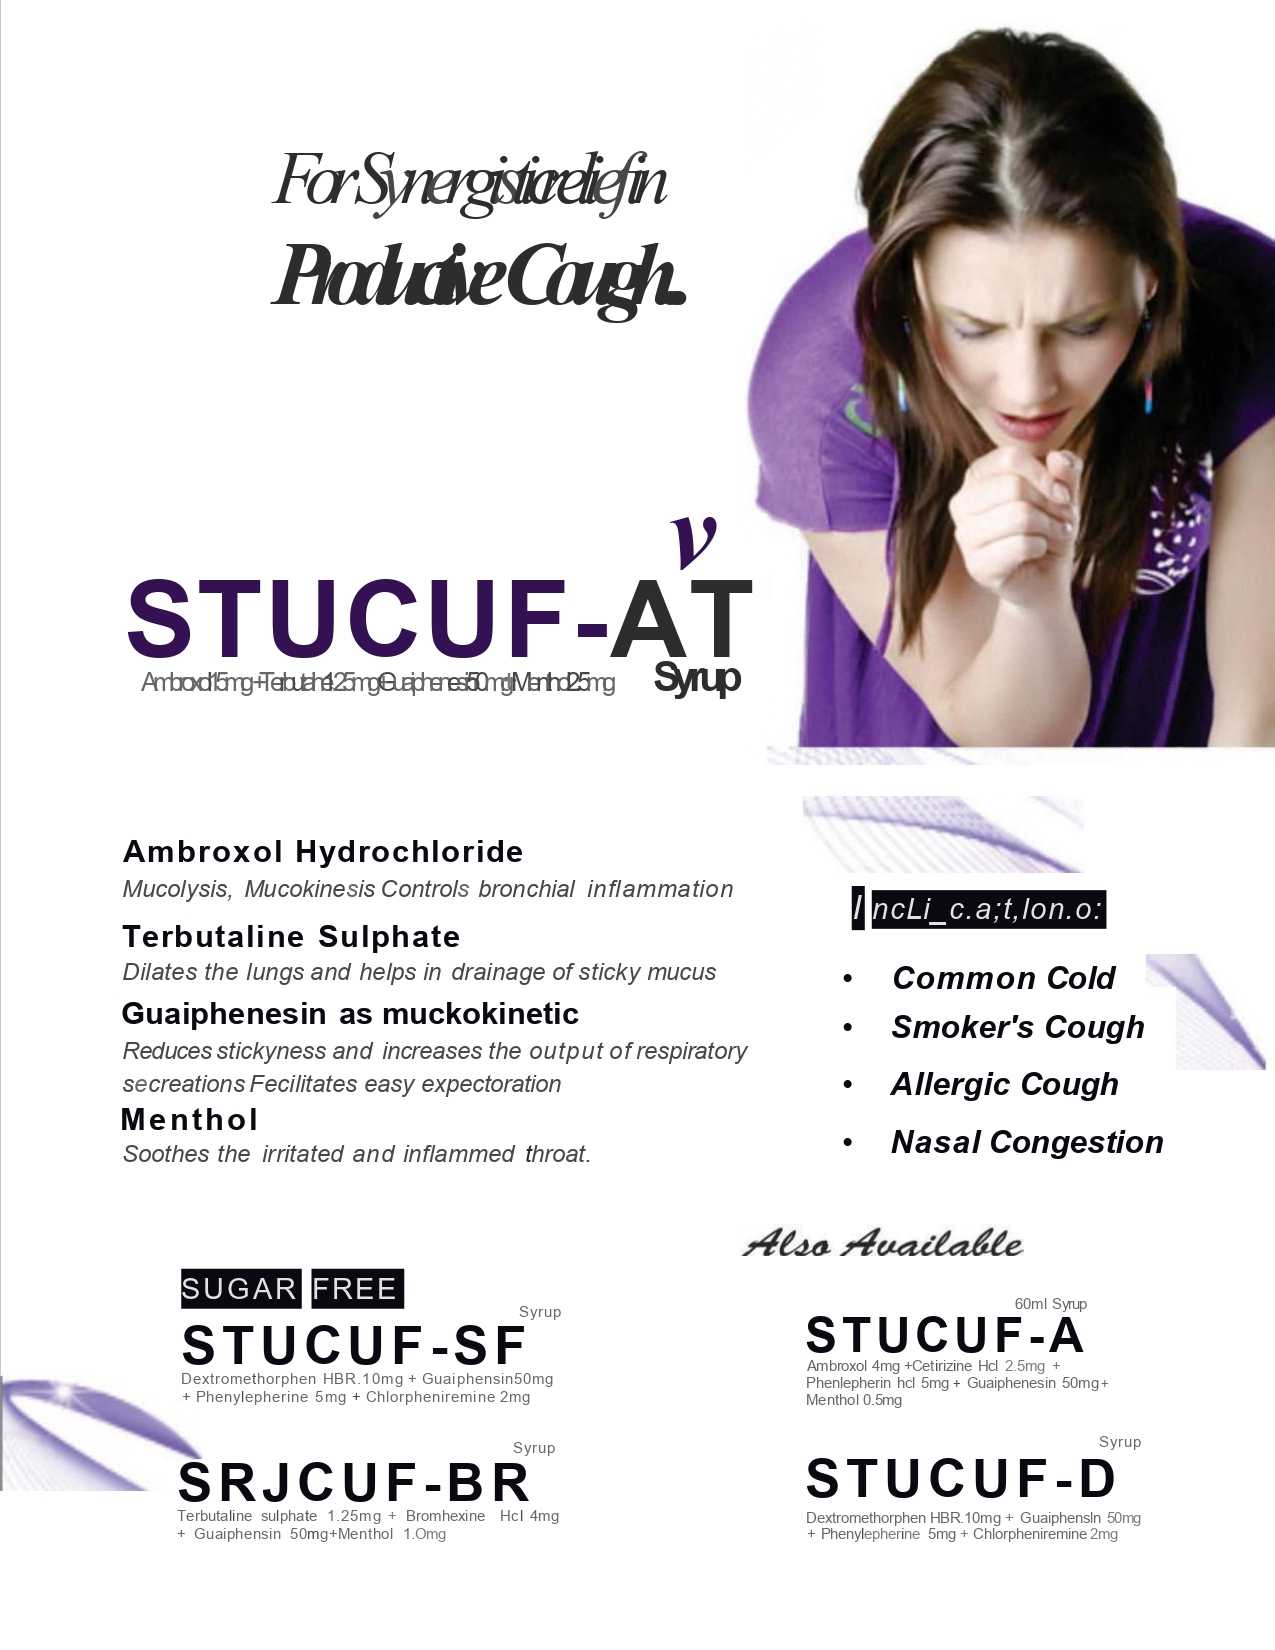 Stucuf-A